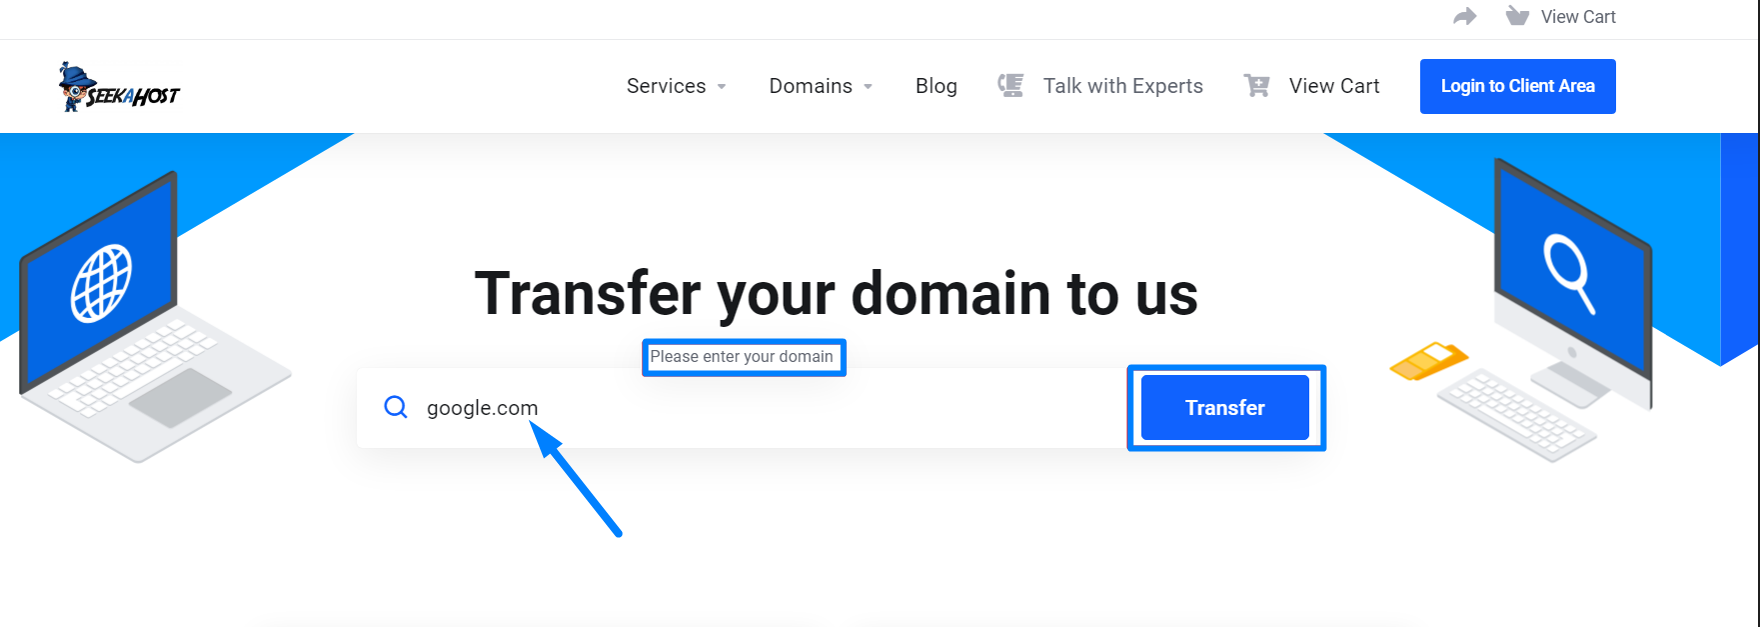 Enter Domain Name to Transfer